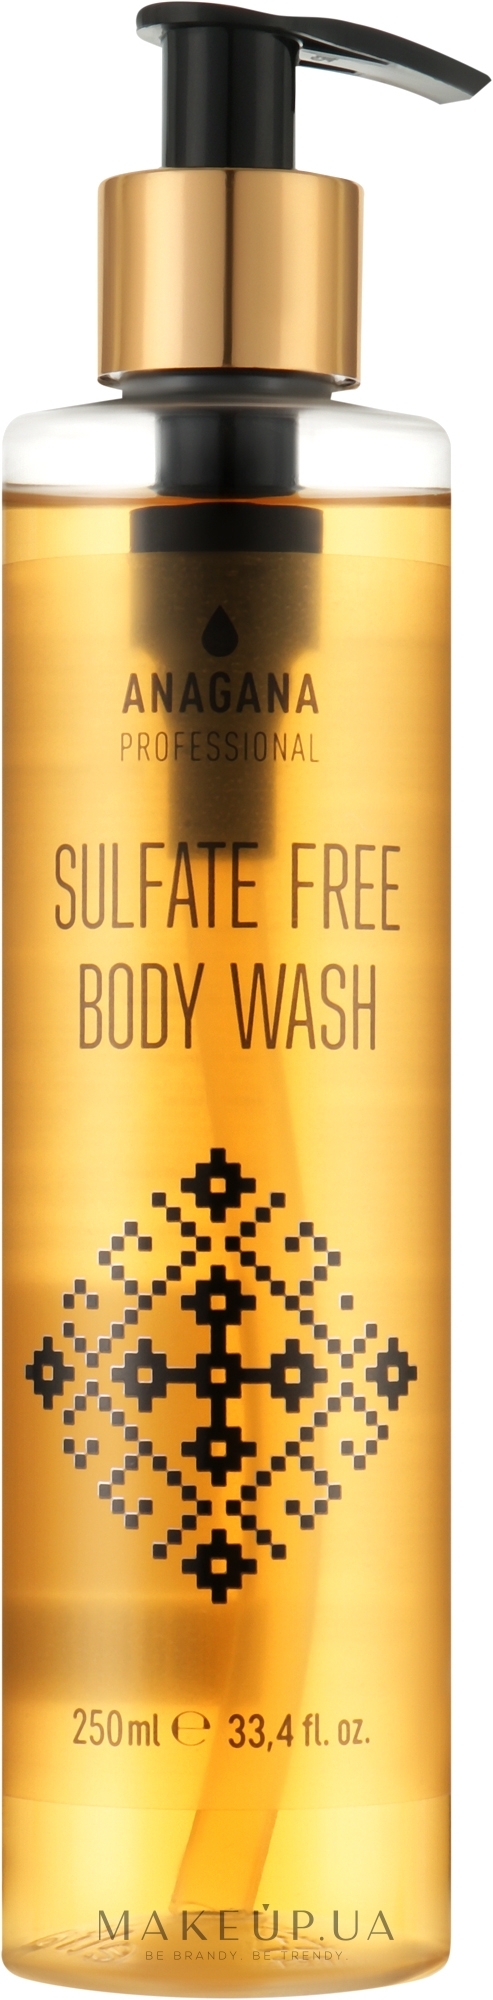 Бессульфатный гель для душа - Anagana Professional Sulfate Free Body Wash — фото 250ml